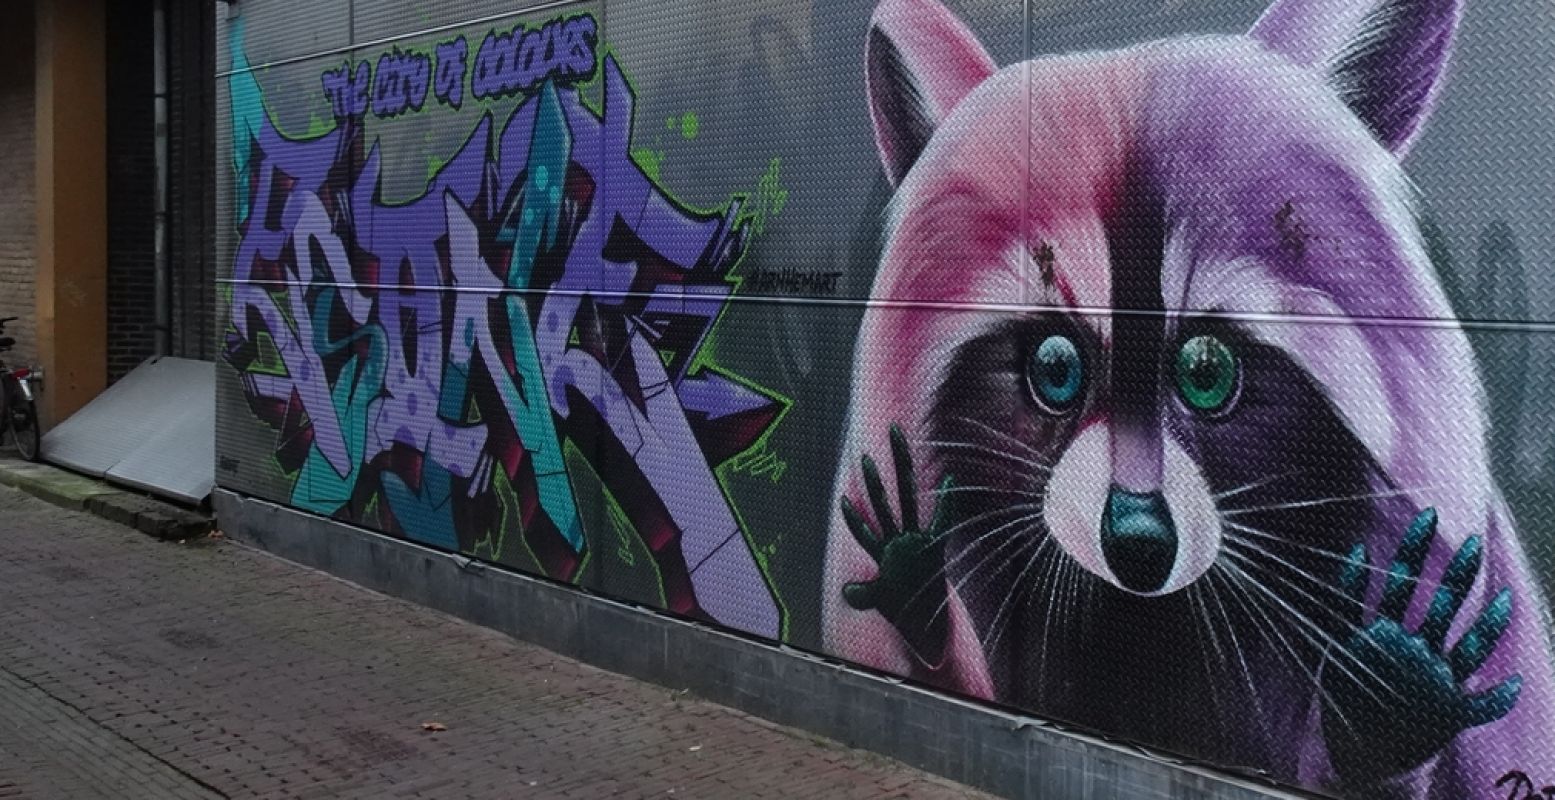 De roze wasbeer in Arnhem lijkt uit de muur te willen ontsnappen. Foto: DagjeWeg.NL © Thijs Löwenthal